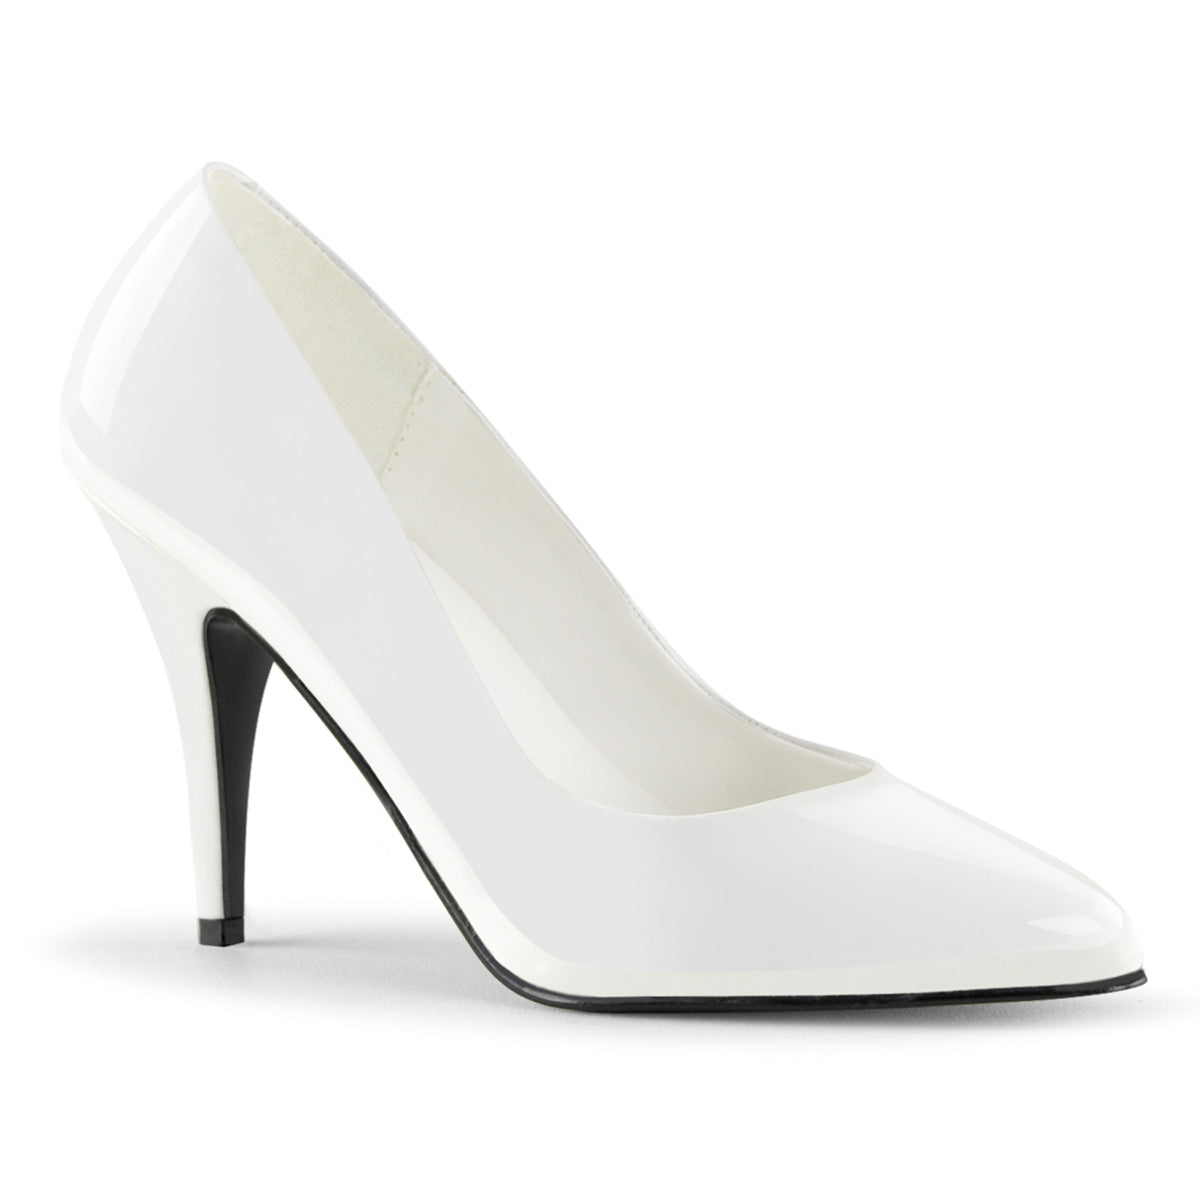 VANITY-420 Pleaser Shoe 4" Heel White Patent Fetish Footwear